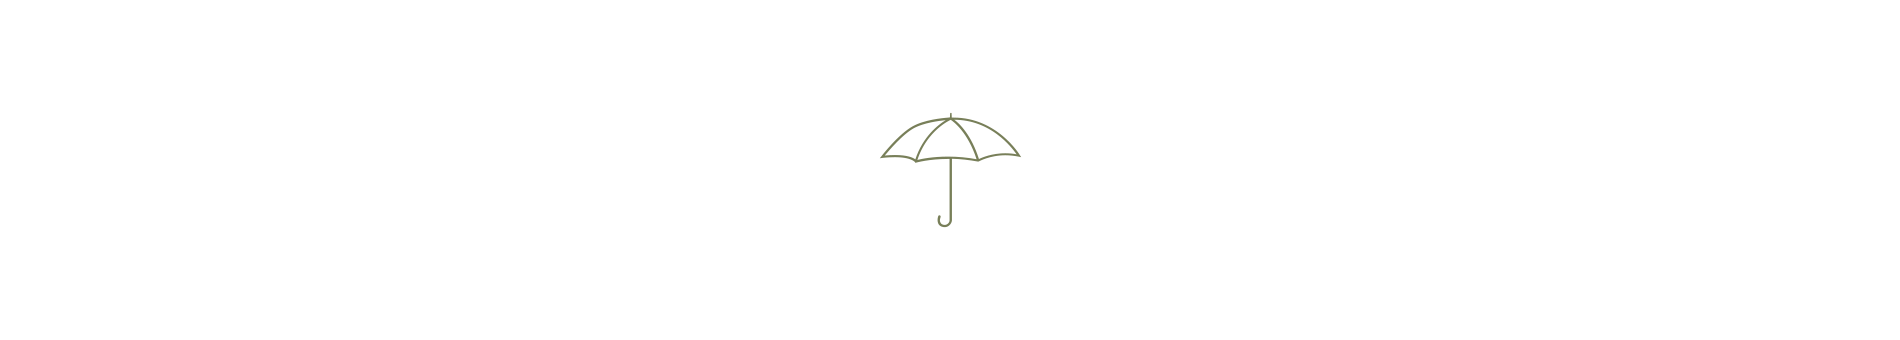 Imperméables - Parapluies - Ponchos